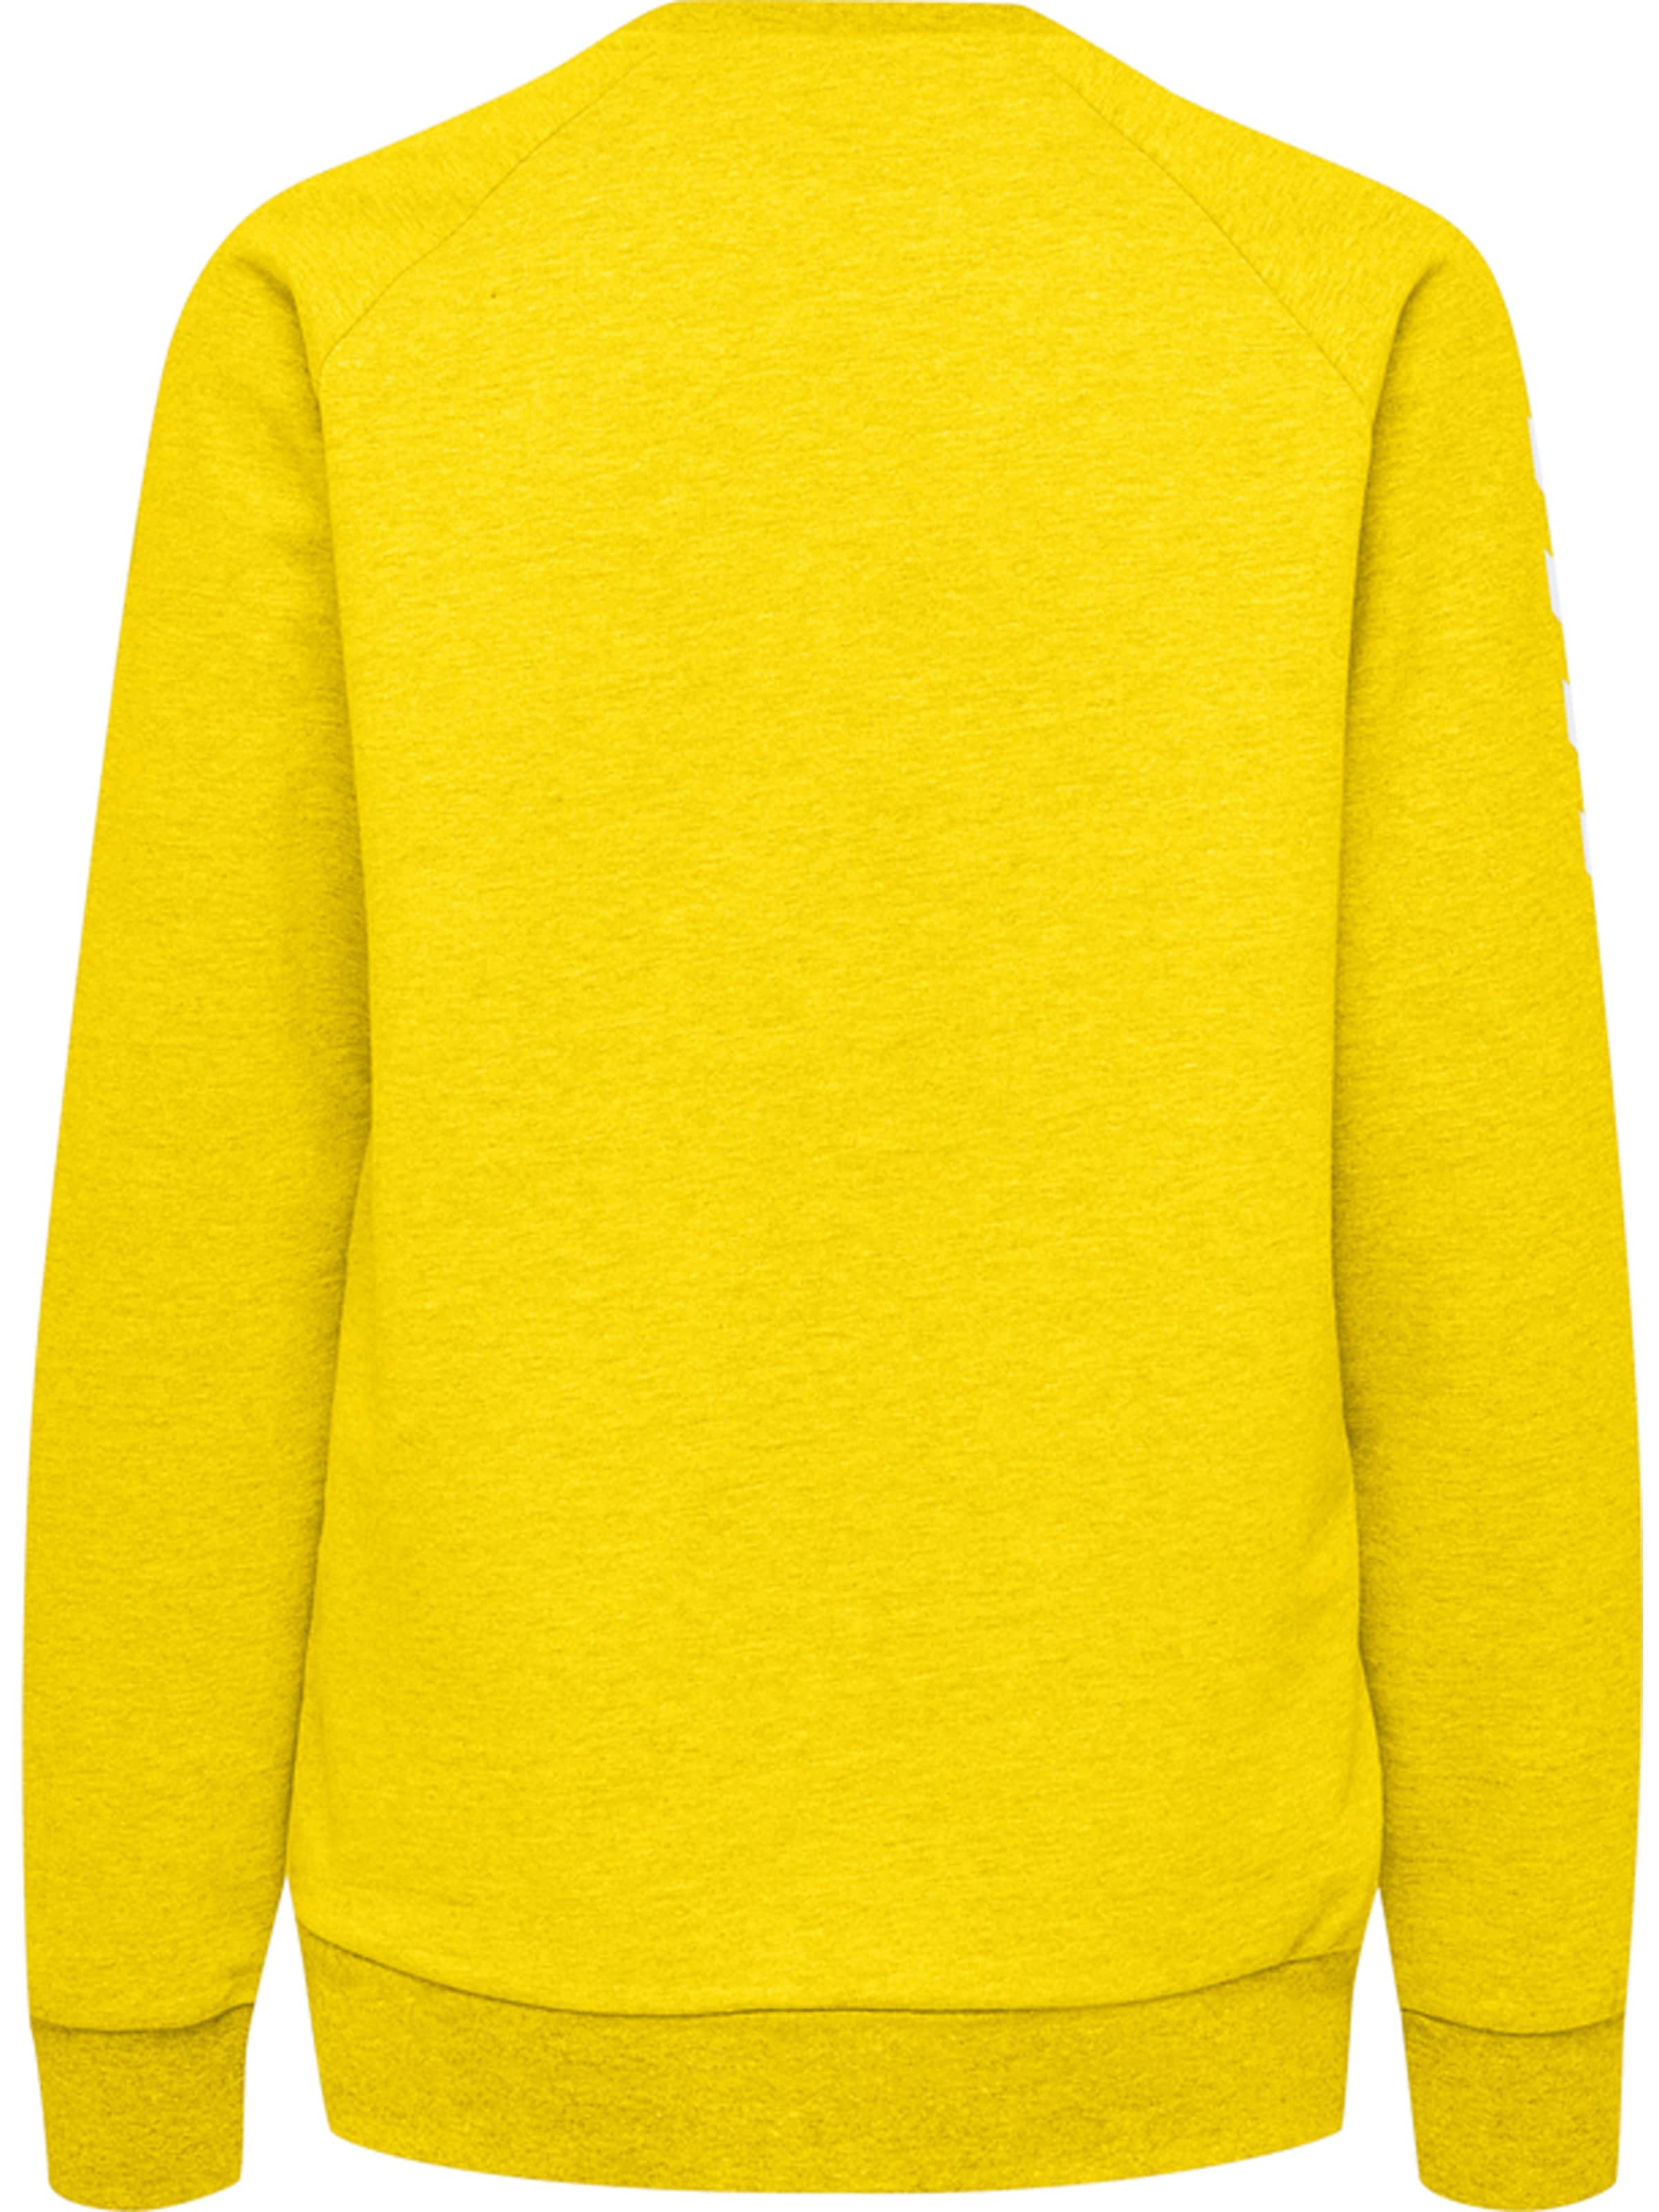 Frauen Sportarten Hummel Sweatshirt in Gelb, Weiß - NF67502